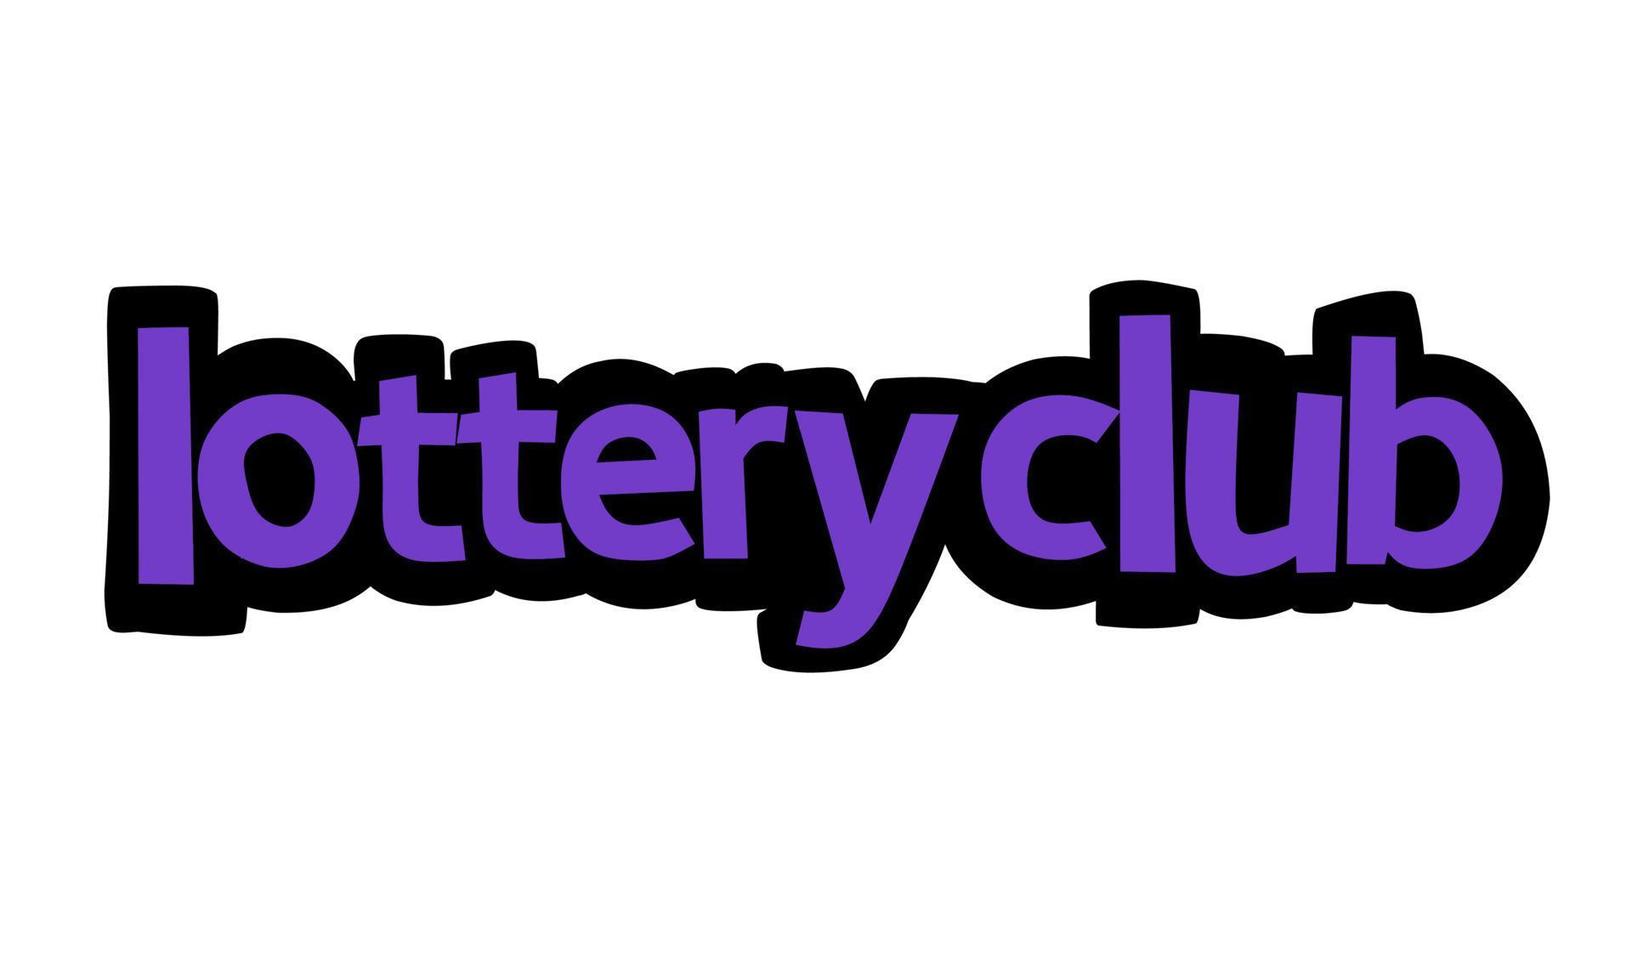 lotteria club scrittura disegno vettoriale su sfondo bianco